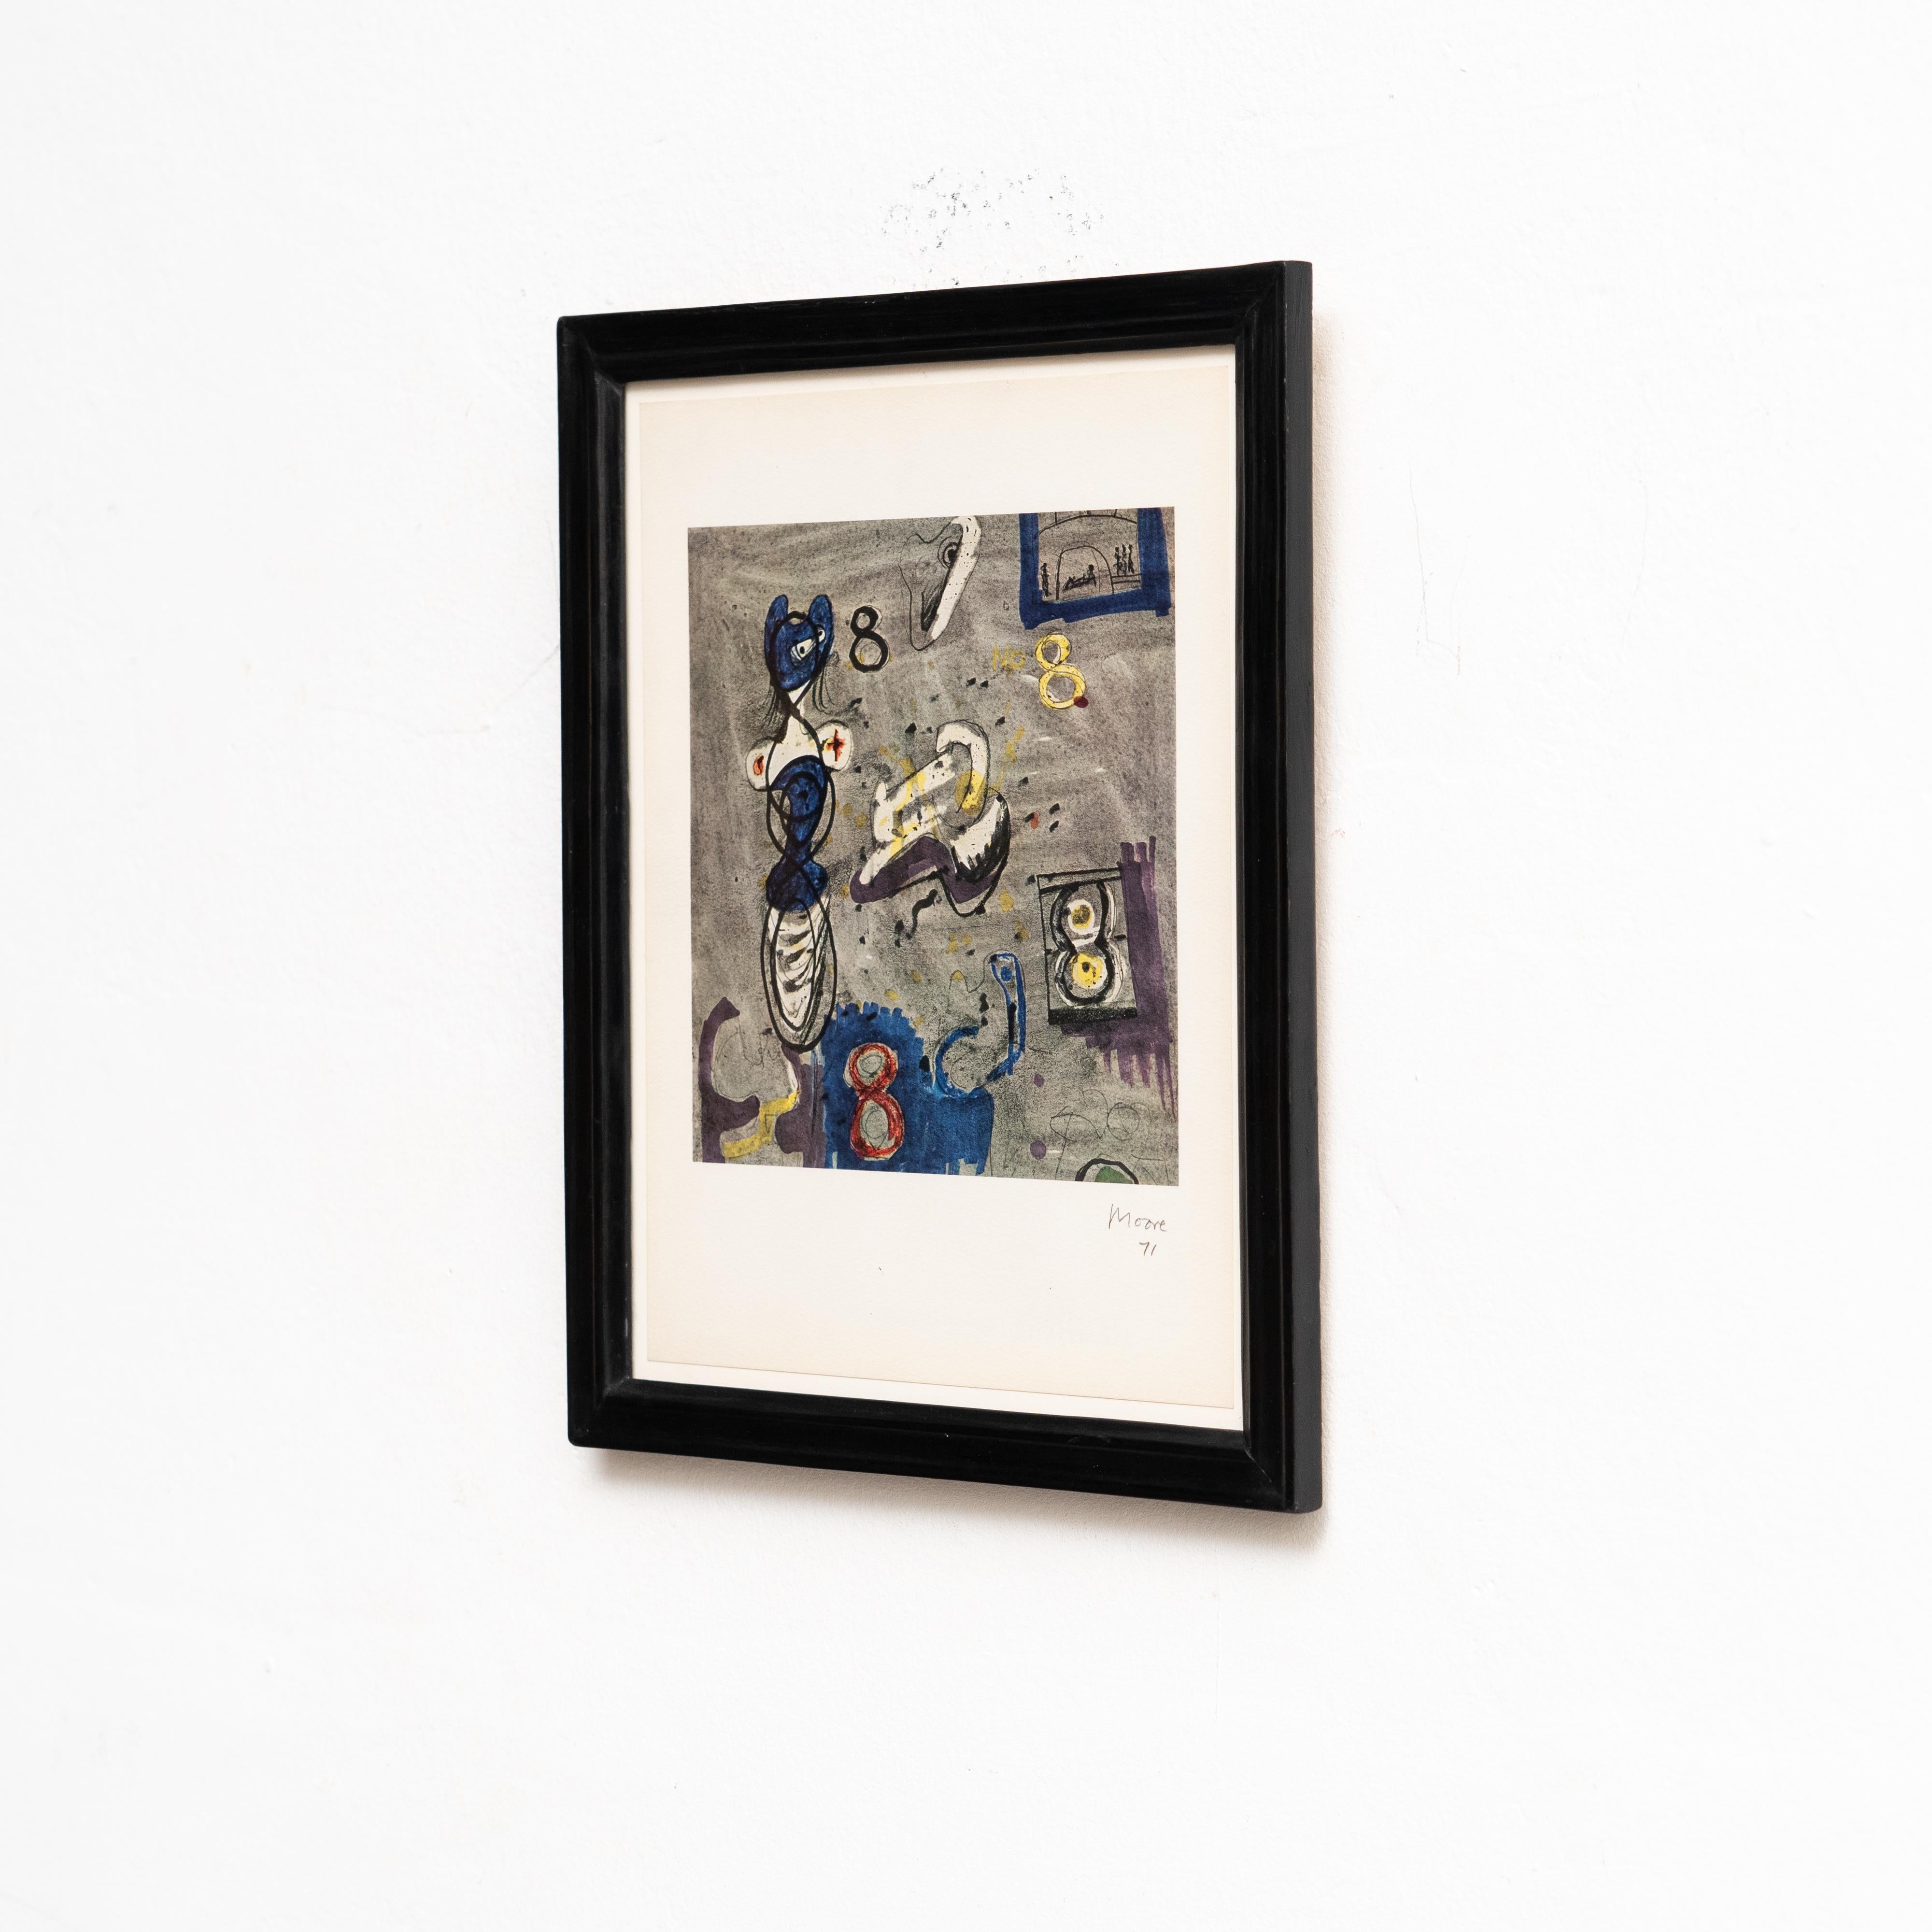 Fotolithografische Reproduktion des Werks von Henry Moore für Bolaffiarte

Hergestellt in England, ca. 1971.

Exemplar 279 von 5000 limitierten Exemplaren.

Gerahmt und im Stein signiert.

In gutem Originalzustand, mit geringen alters- und